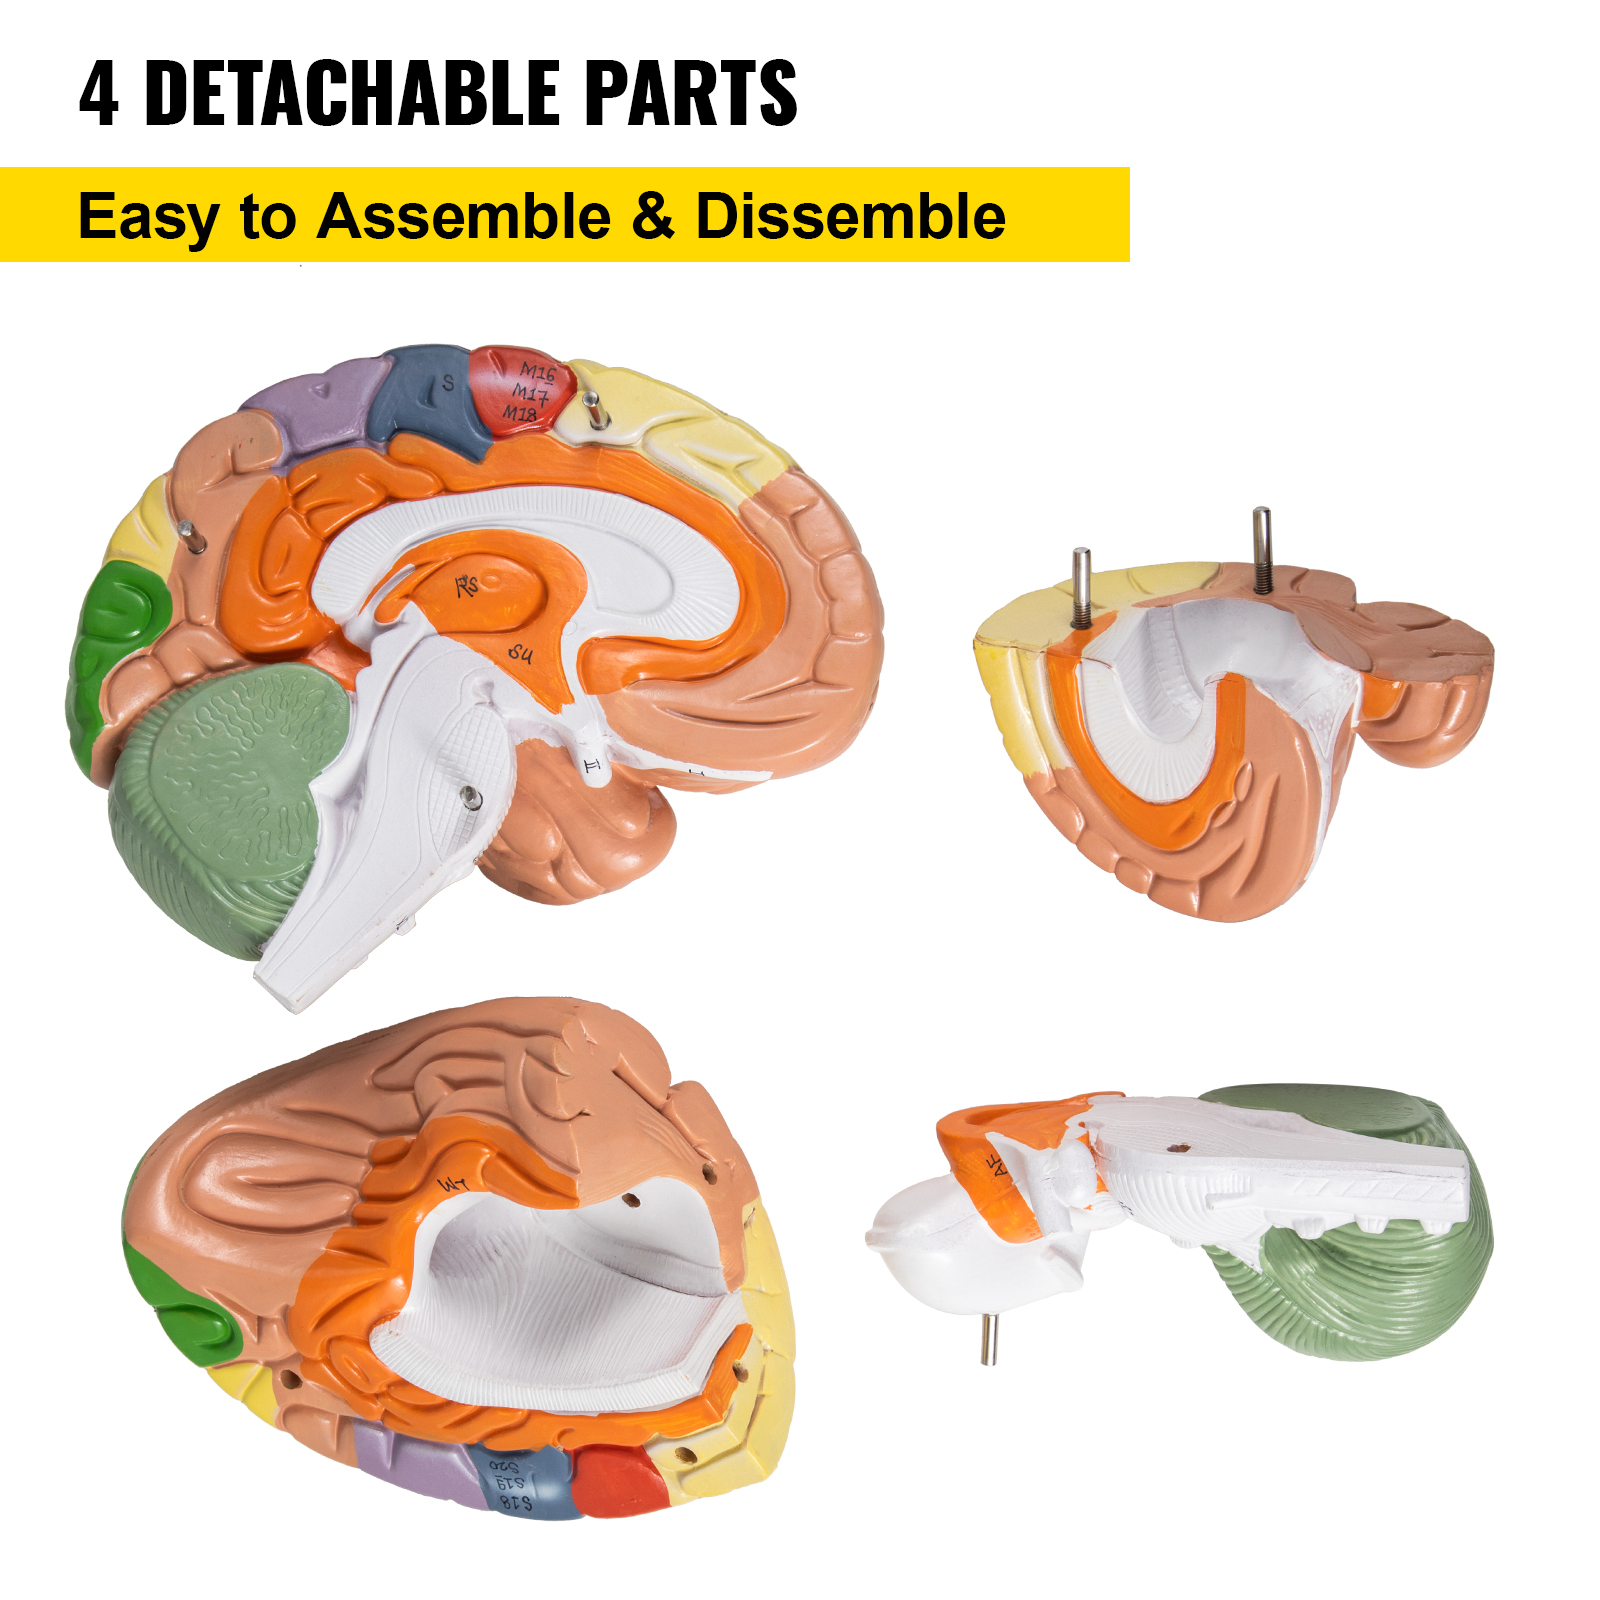 Анатомічна модель мозку людини VEVOR з ПВХ 22×17×16см модель мозку можна розібрати на 4 частини, що ідеально підходить для викладання та вивчення будови мозку та анатомічної неврології